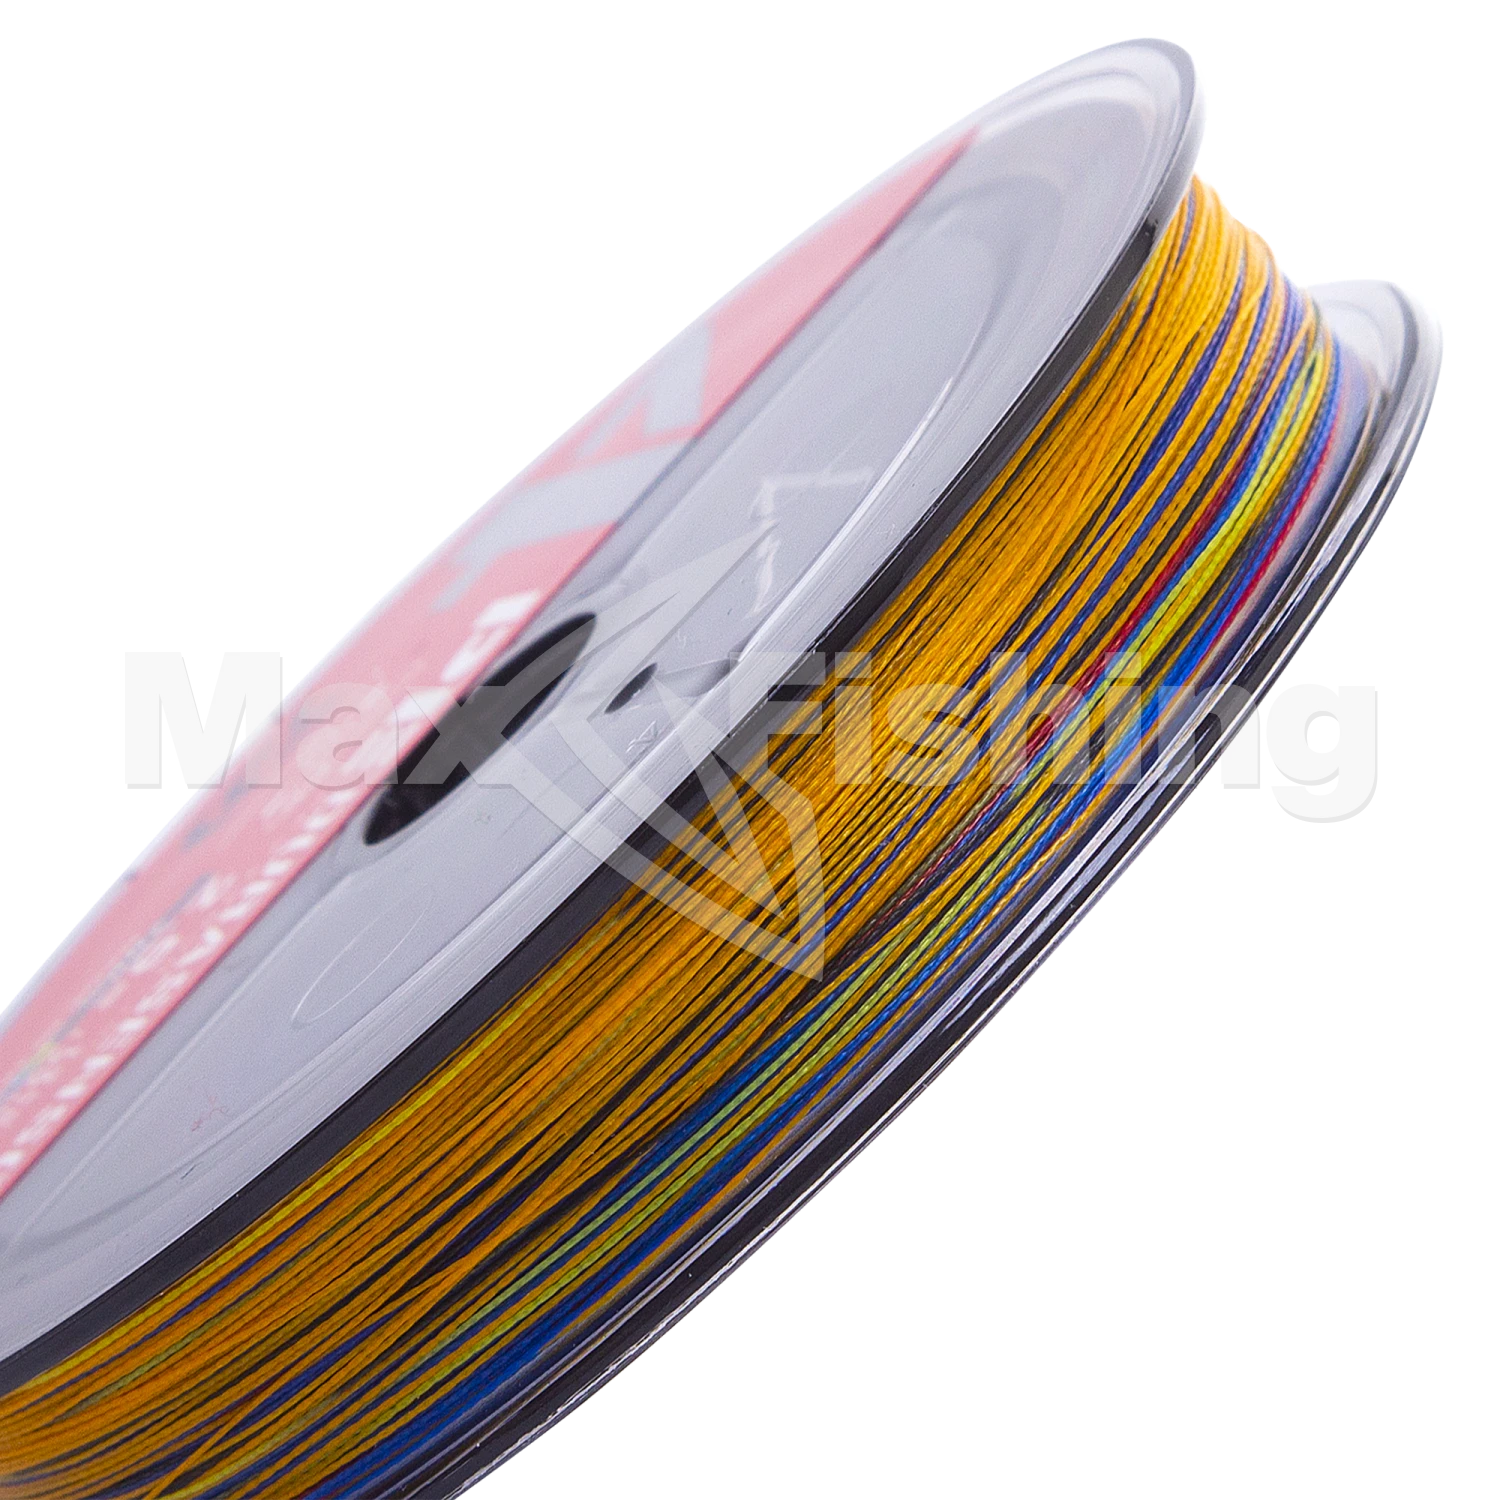 Шнур плетеный Daiwa UVF PE DuraSensor X4 +Si2 #2,5 0,260мм 200м (5color)